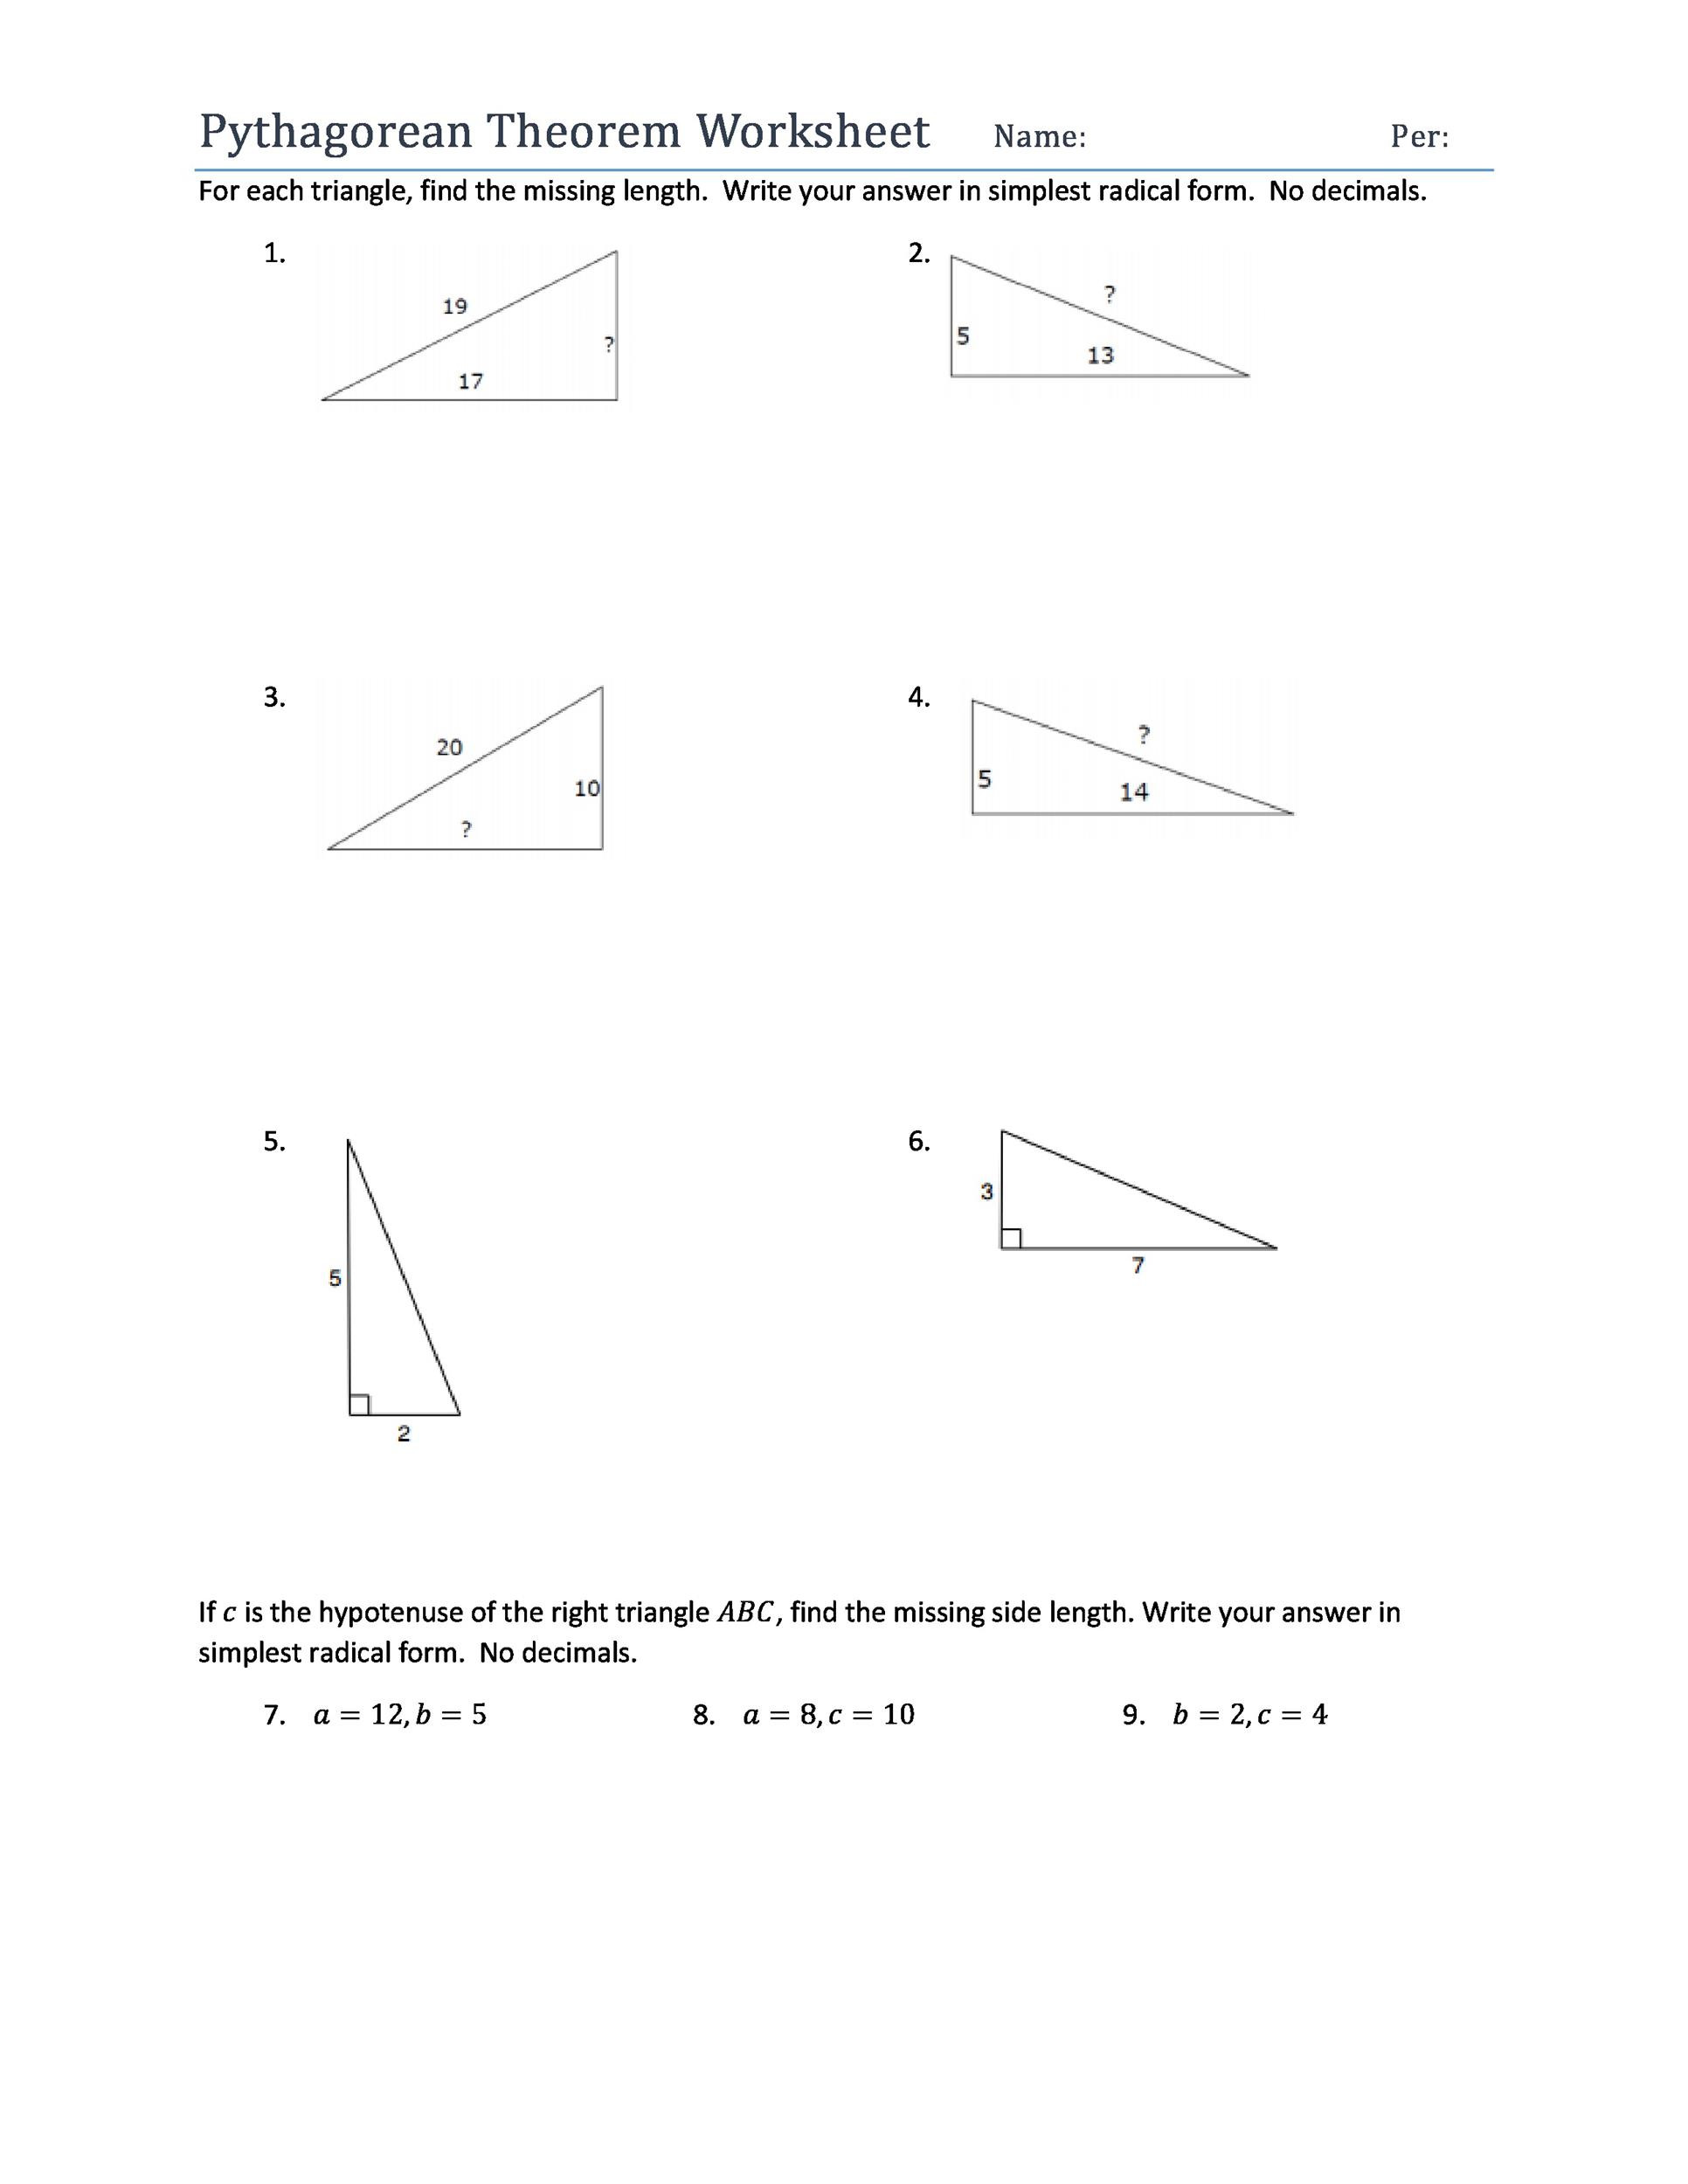 Pythagorean theorem Worksheet Answers 48 Pythagorean theorem Worksheet with Answers [word Pdf]